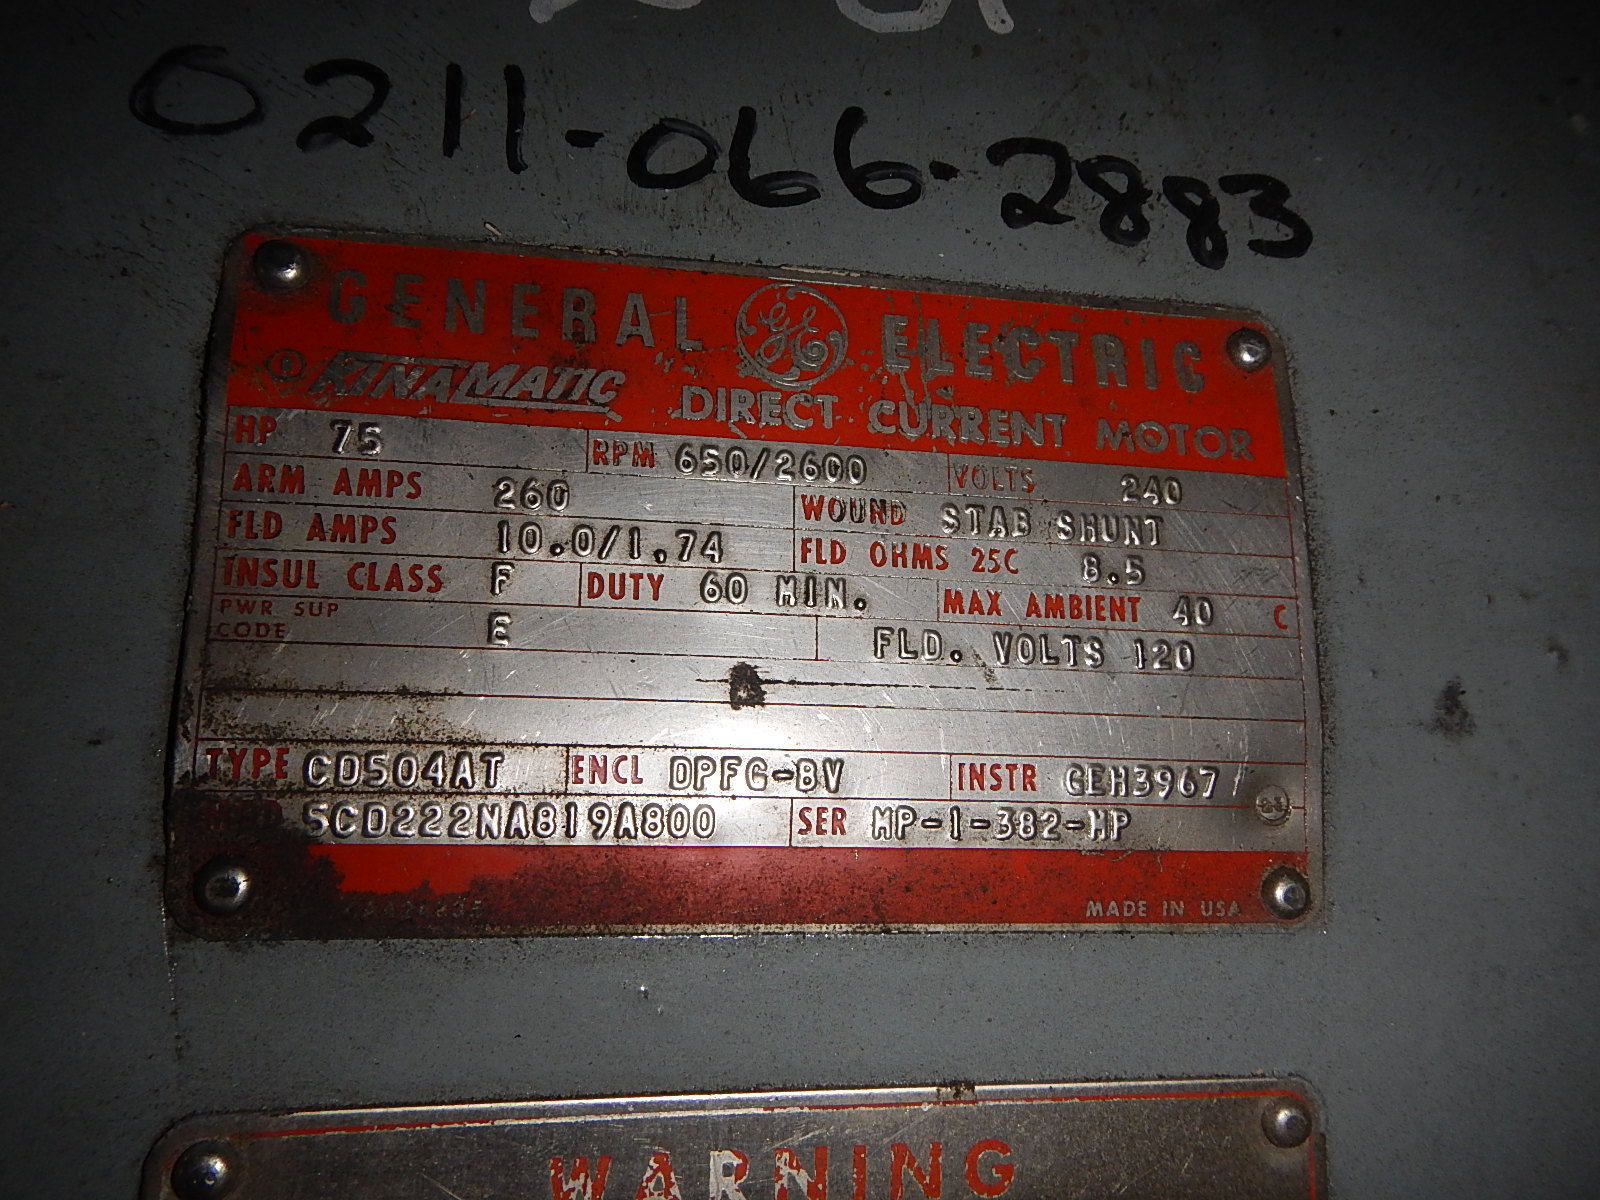 General Electric 75 HP 650/2600 RPM 504AT DC Motors 71007